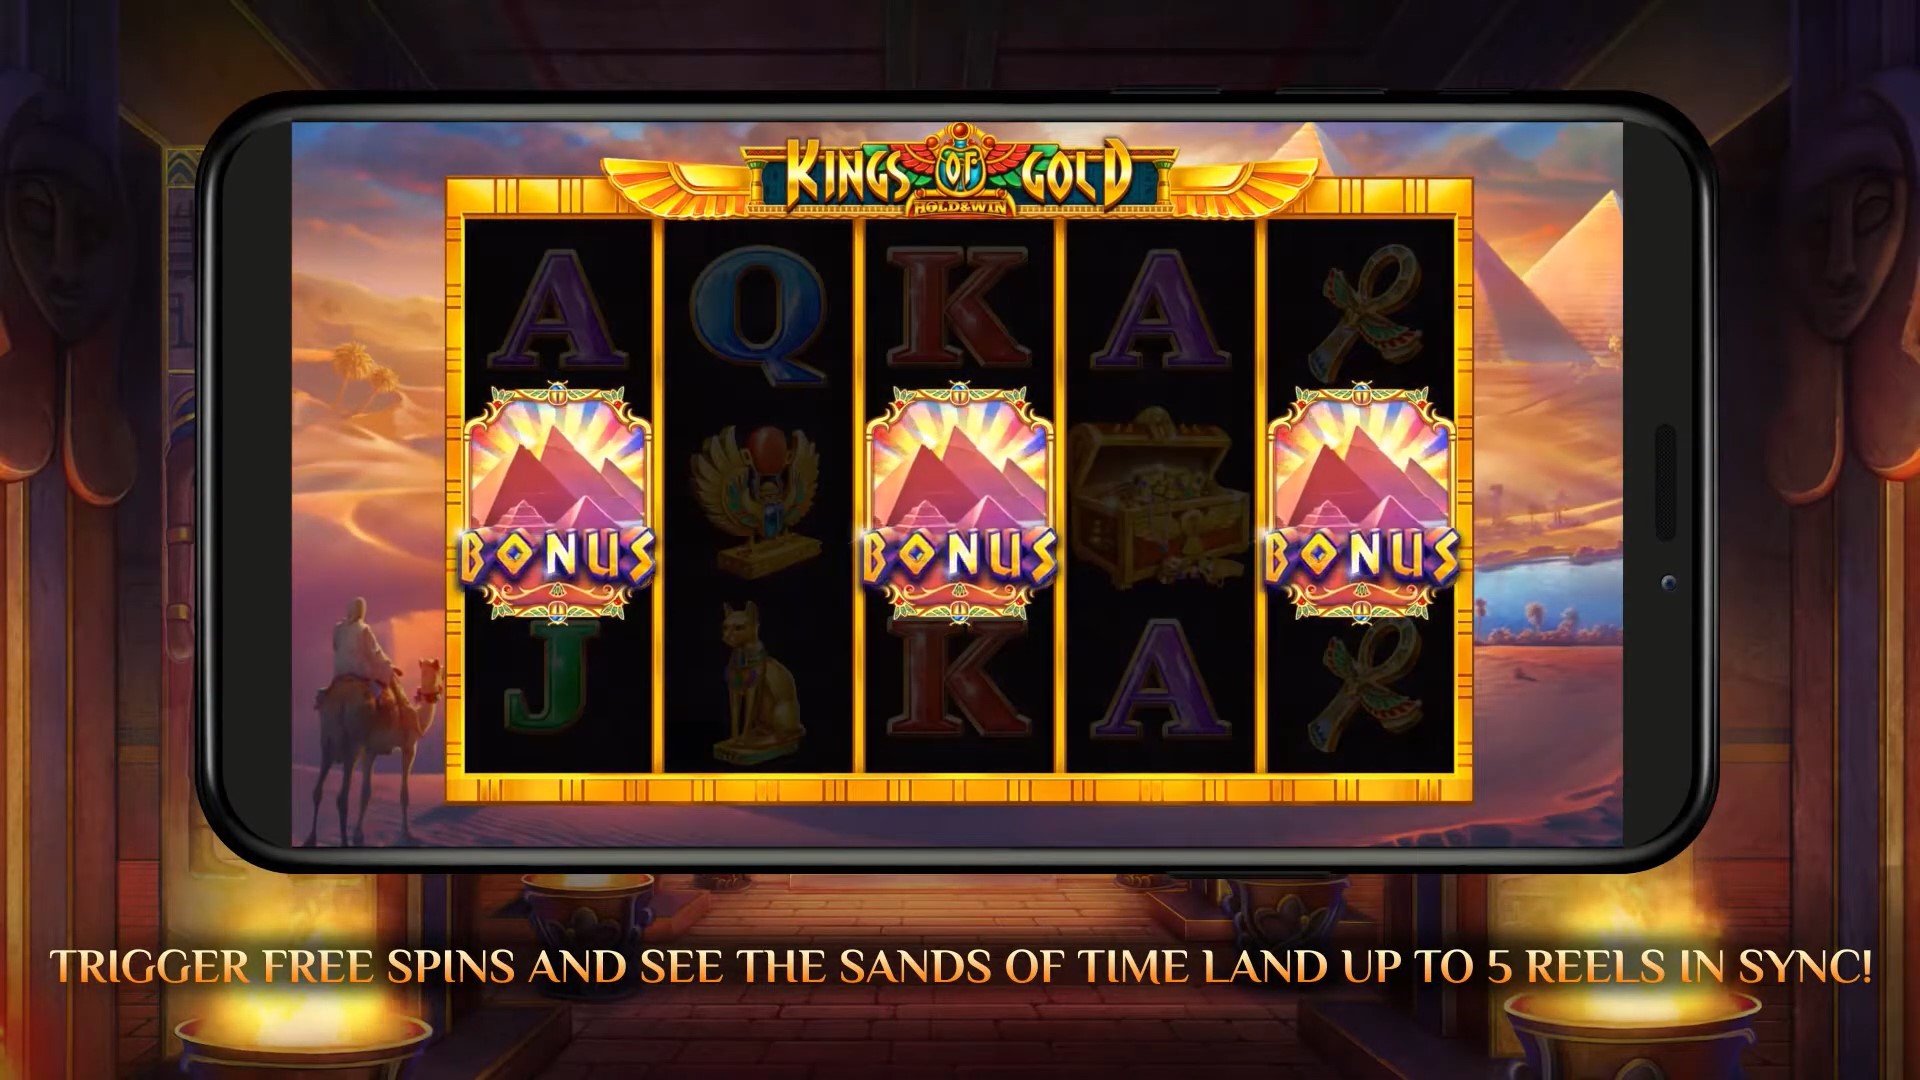 Kings of Gold bonus iSoftBet